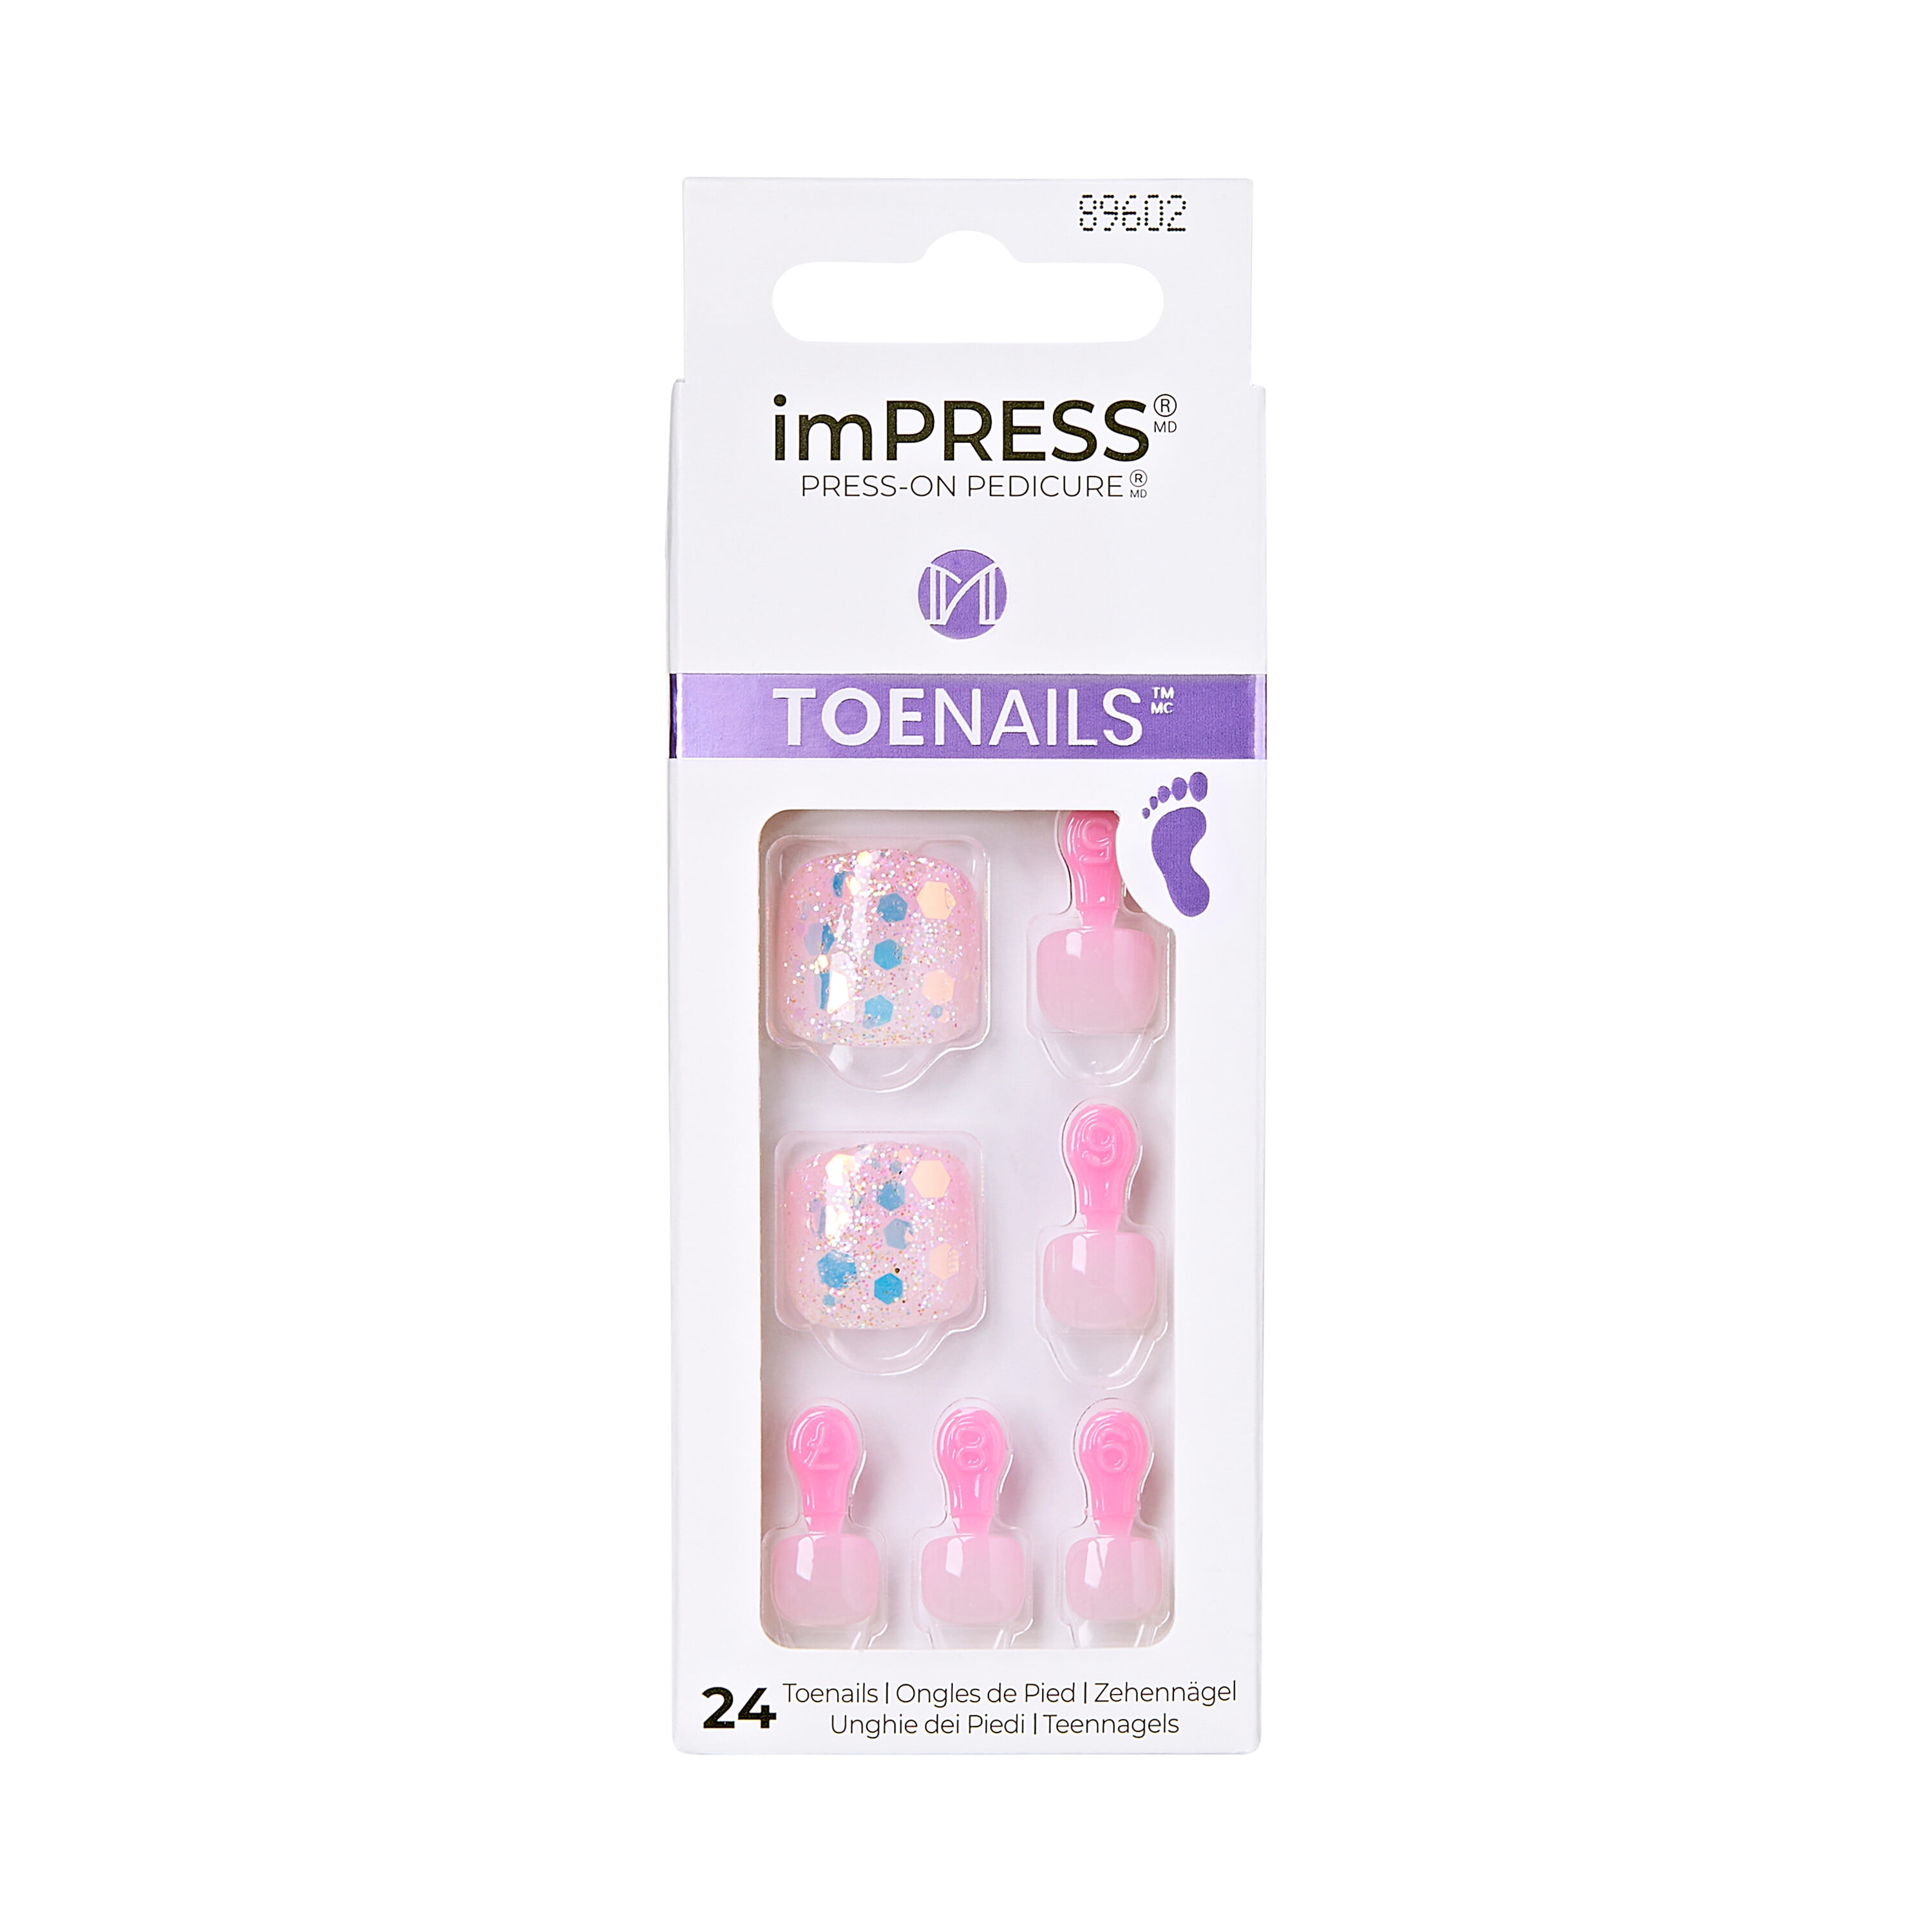 KISS imPRESS Press-On Pedicure Fake Toenails Kit Style Impressive